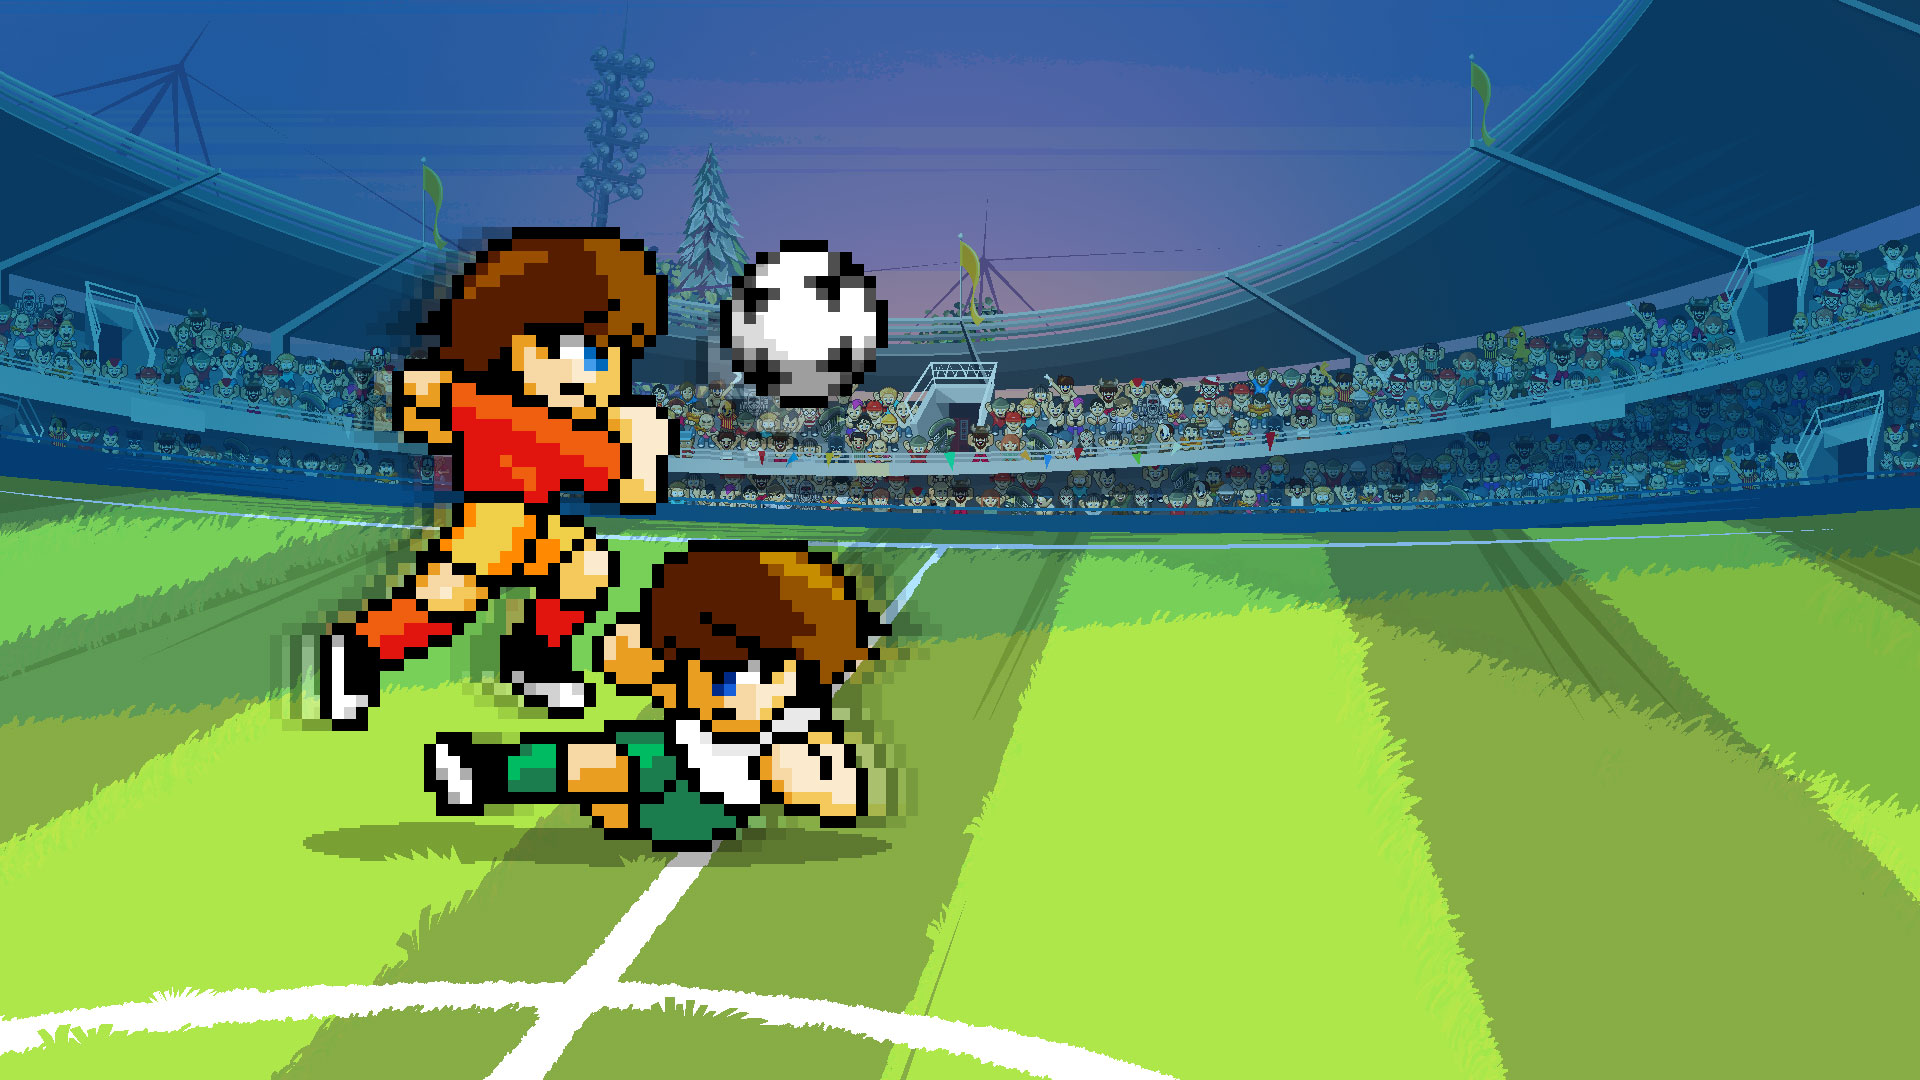 Играть в футбол 17. Пиксельный футбол ПК. Pixel Soccer игра. Футбол сега. Pixel Art футбольный матч.